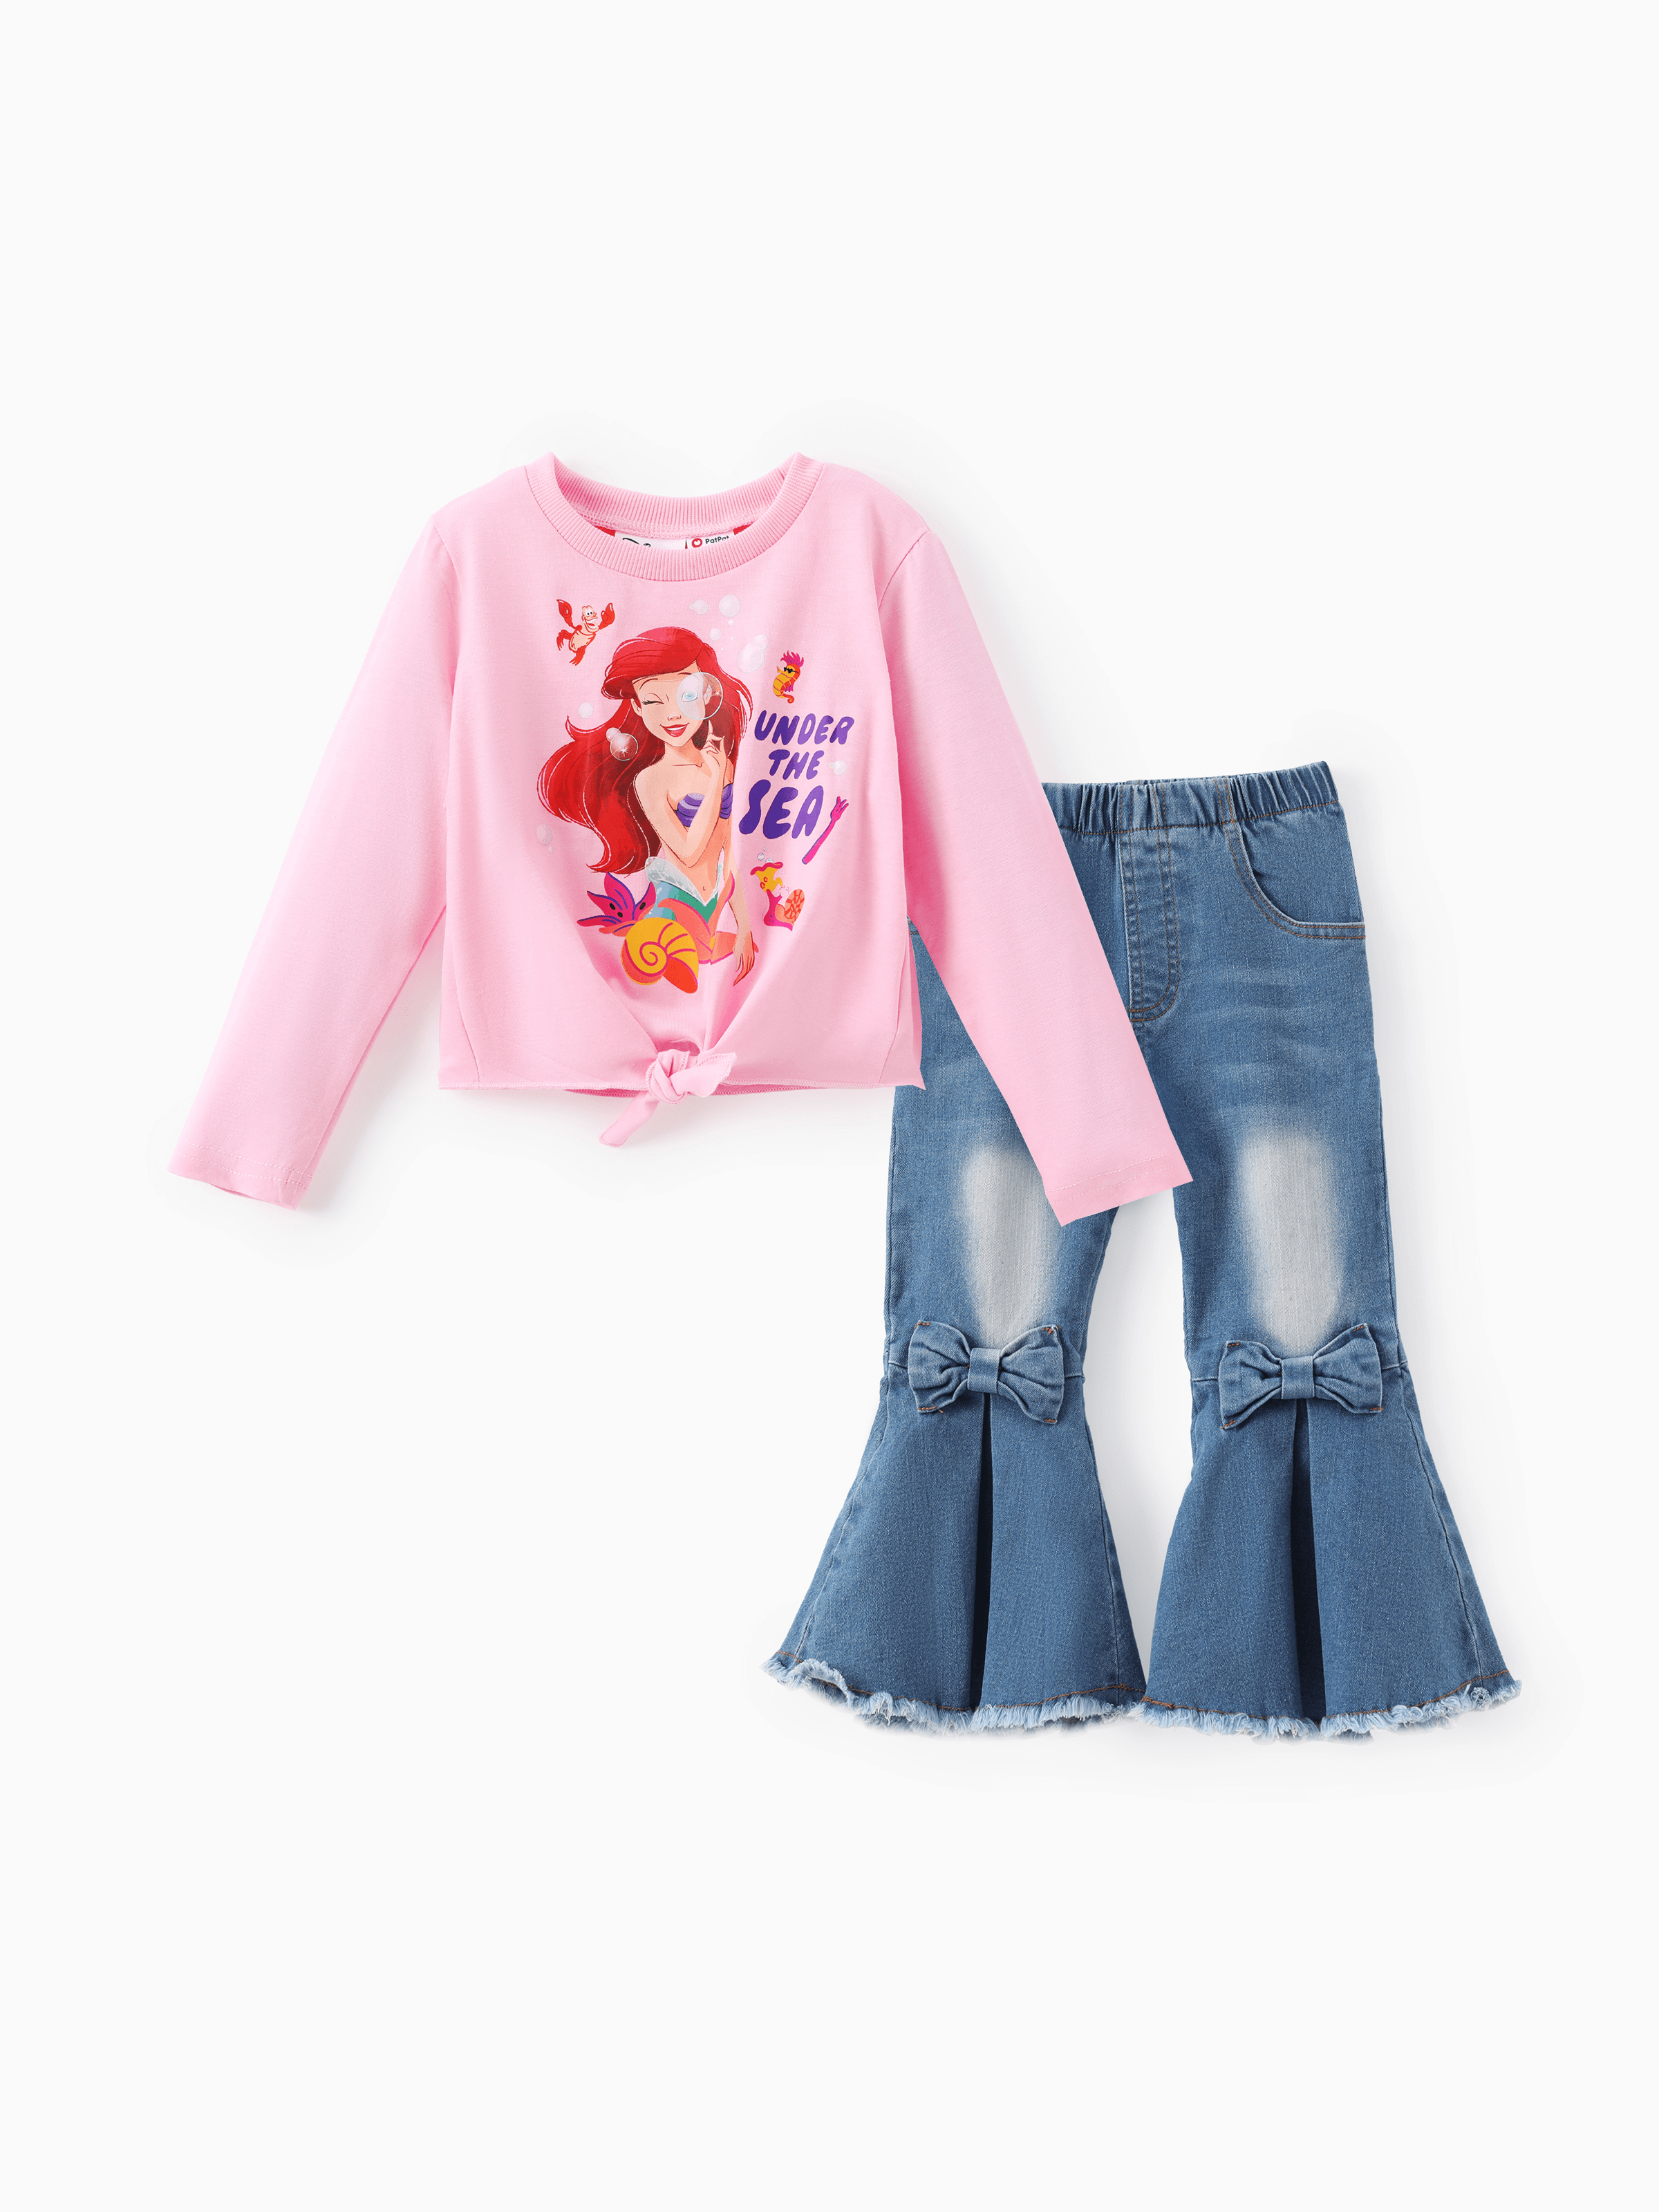 

Disney Princess Toddler Girl 2pcs Long-sleeve Bowknot Top with Cotton Denim Flare Pants Set